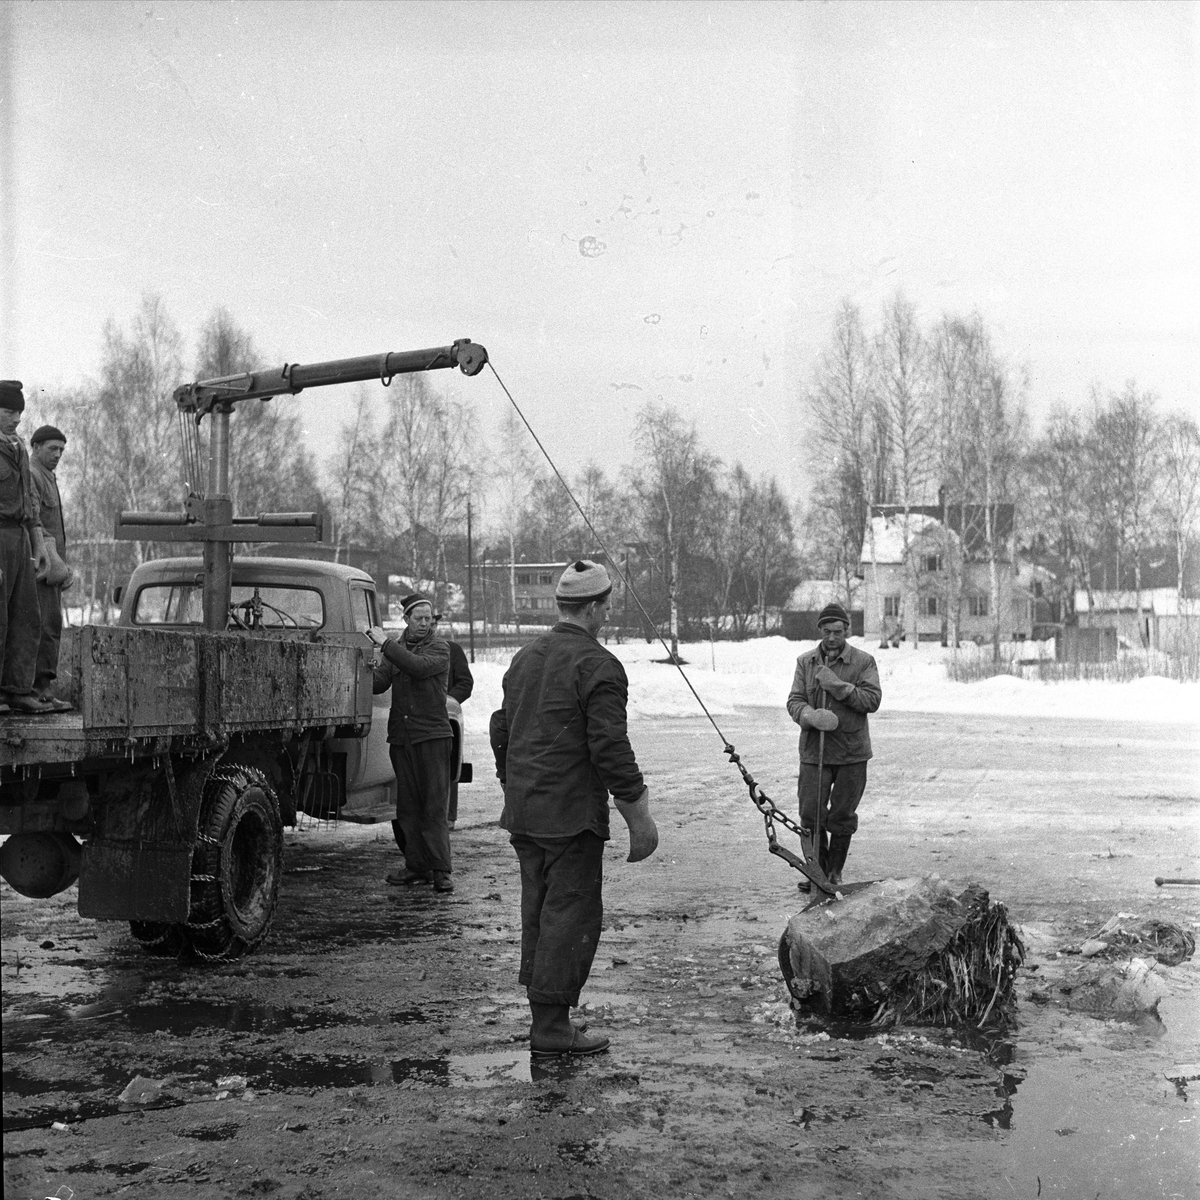 Tjernsmyra, Bærum, Akershus, 11.03.1957. Landskap og menn med kranbil